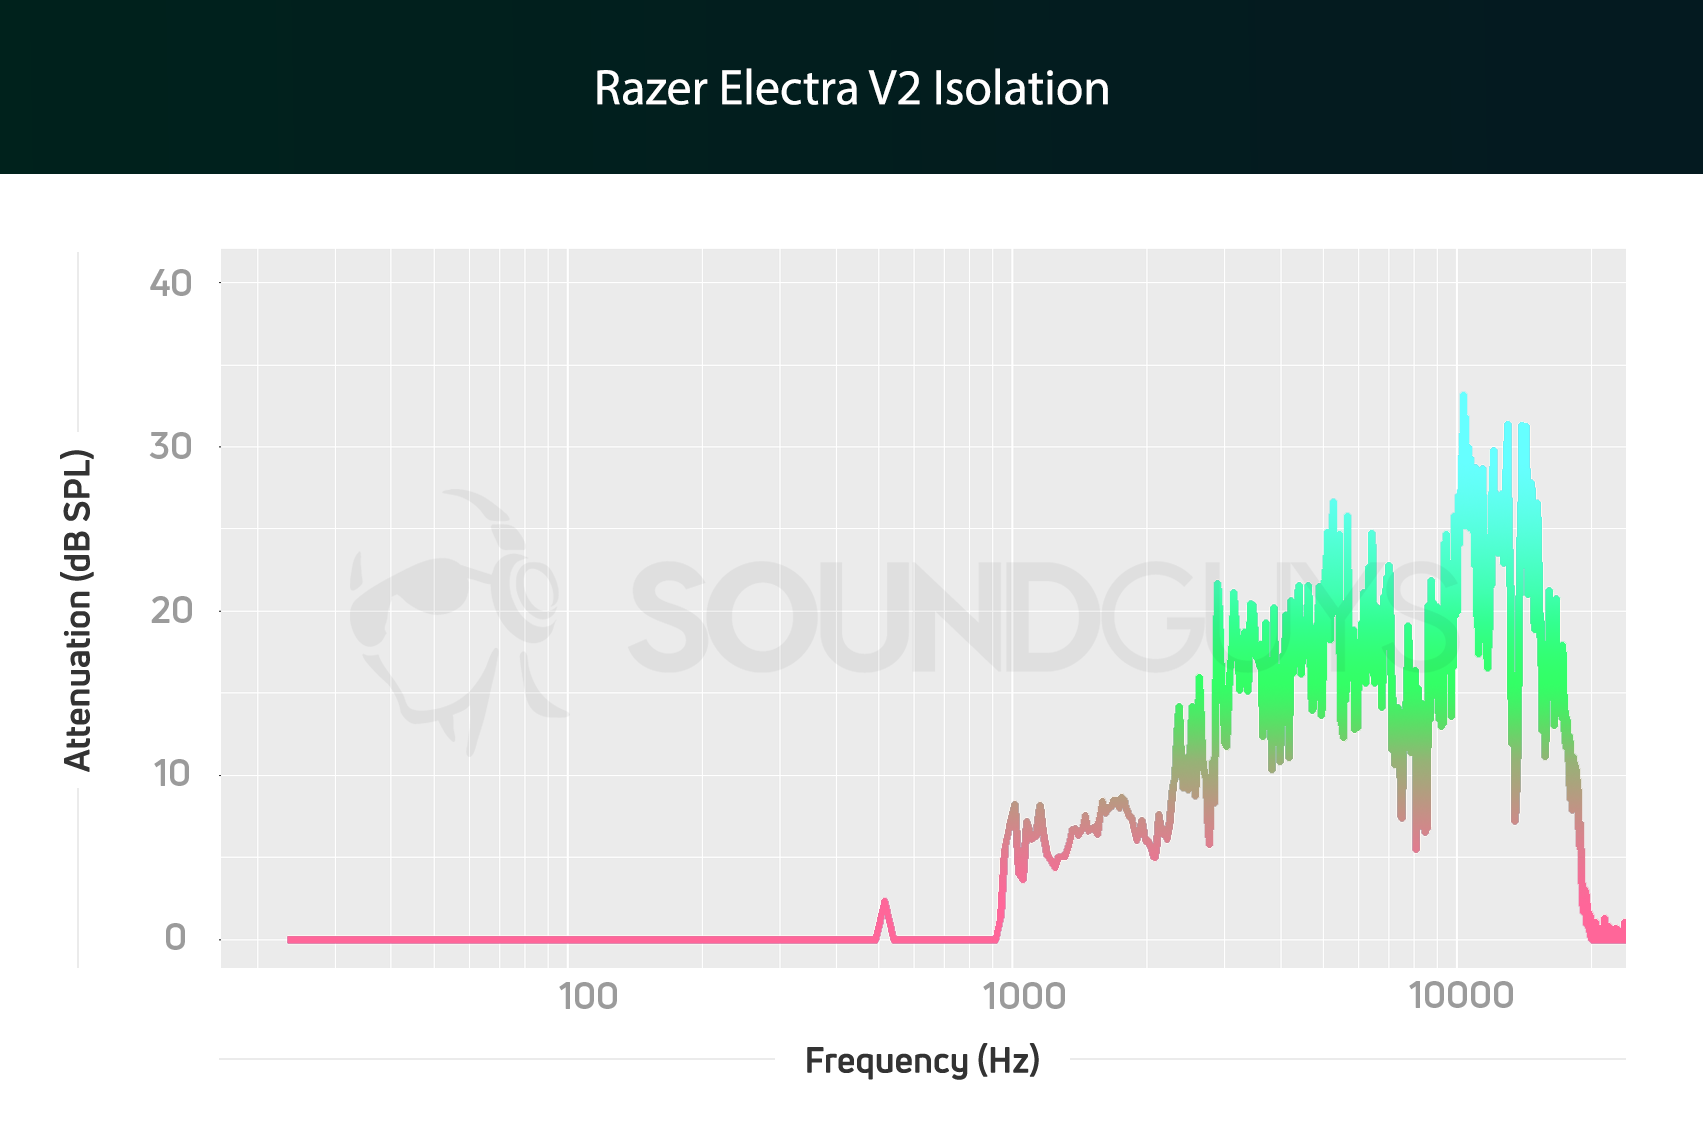 Razer Electra V2 isolation chart